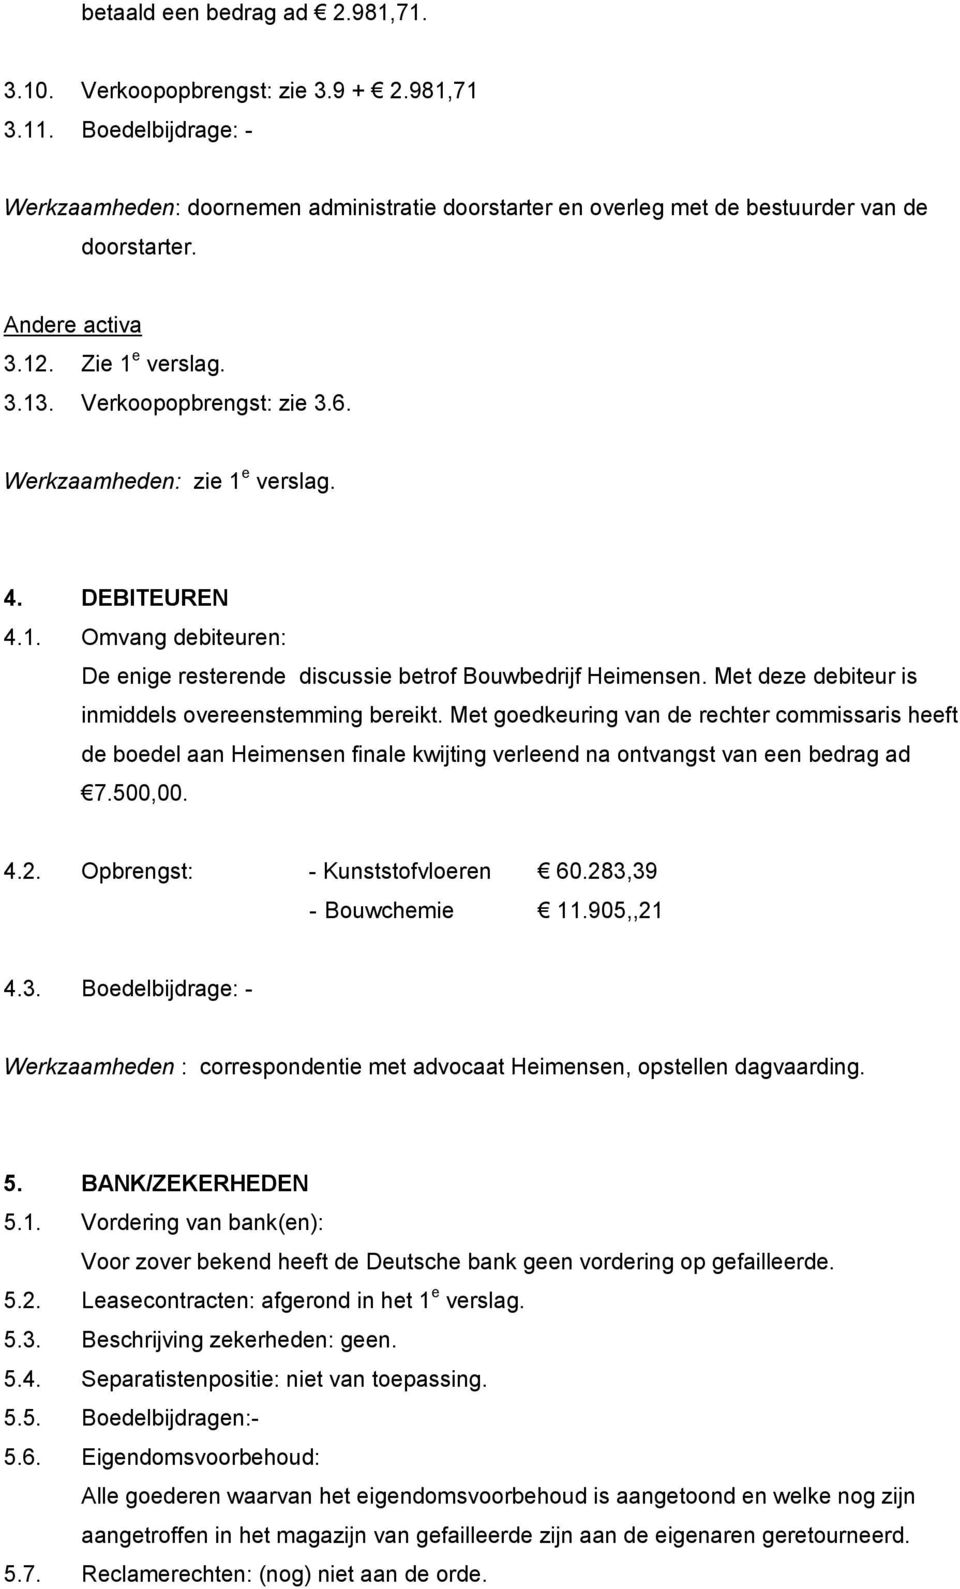 Met deze debiteur is inmiddels overeenstemming bereikt. Met goedkeuring van de rechter commissaris heeft de boedel aan Heimensen finale kwijting verleend na ontvangst van een bedrag ad 7.500,00. 4.2.